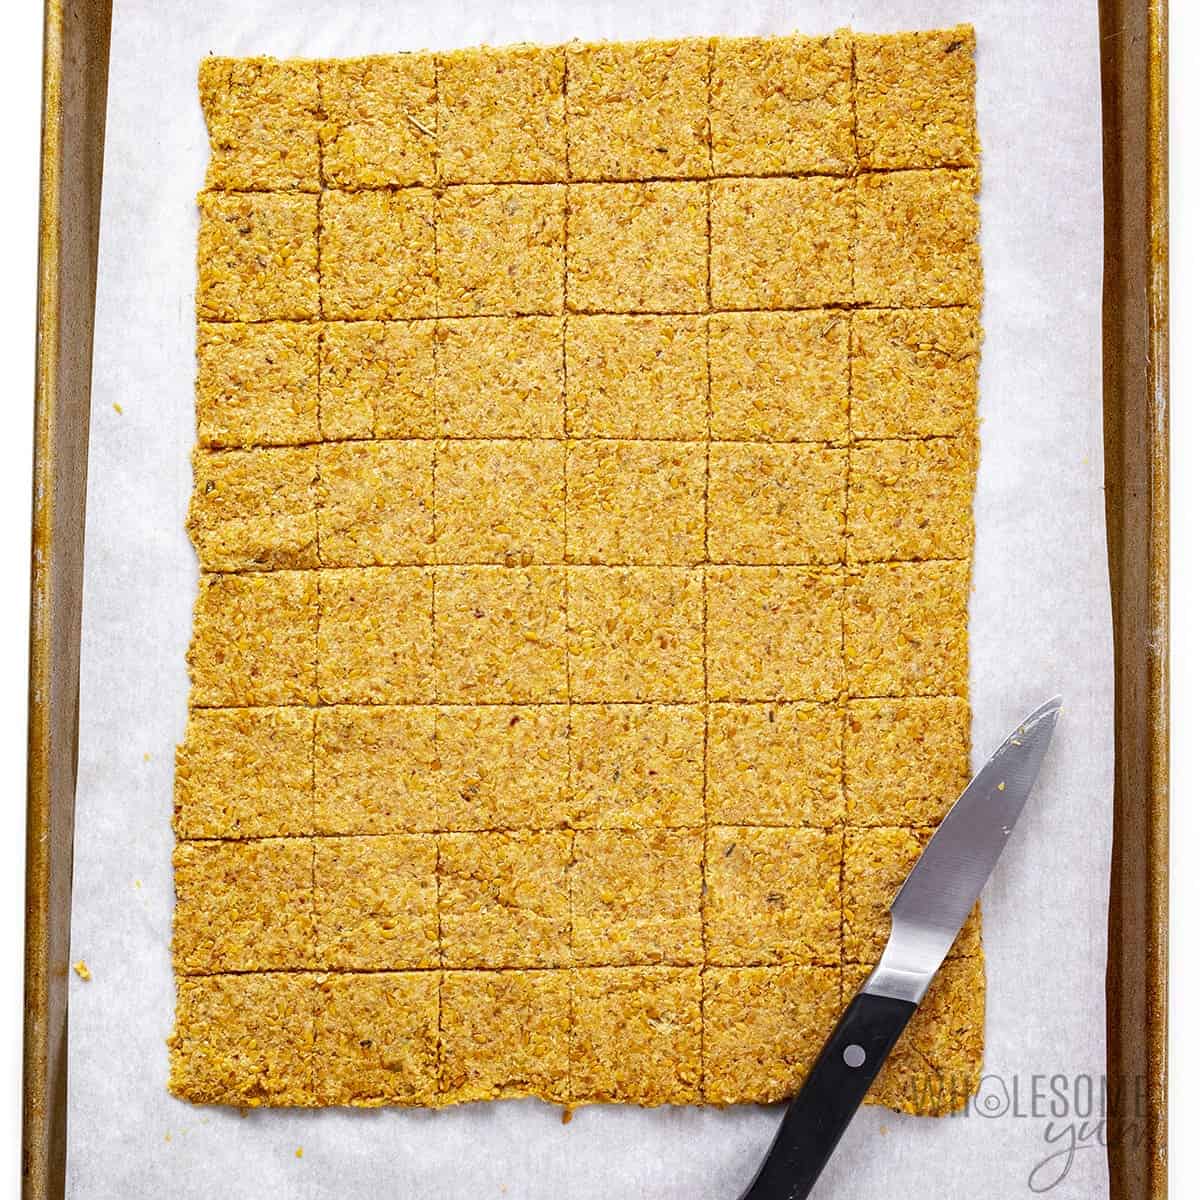 Cracker dough scored on a baking sheet